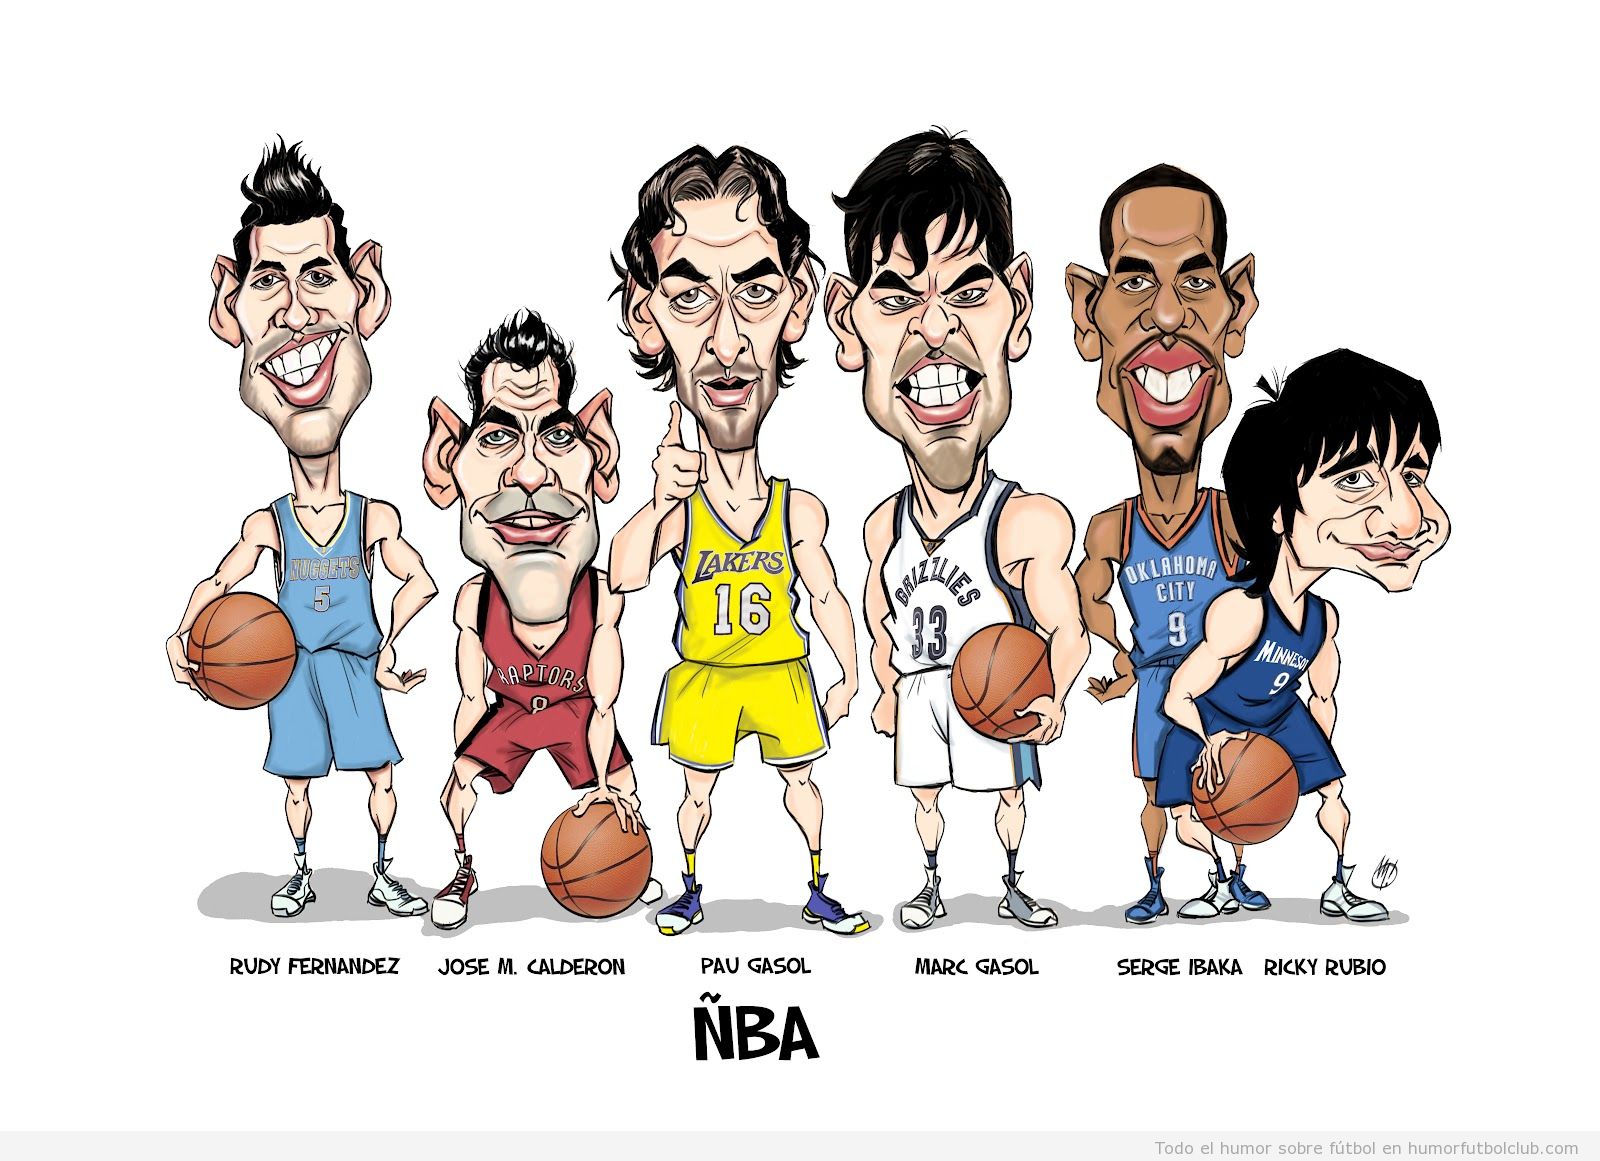 Caricatura de la ÑBA, los jugadores de basket Gasol, Calderon, Ricky Rubio, Rudy, Ibaka que juegan en la NBA